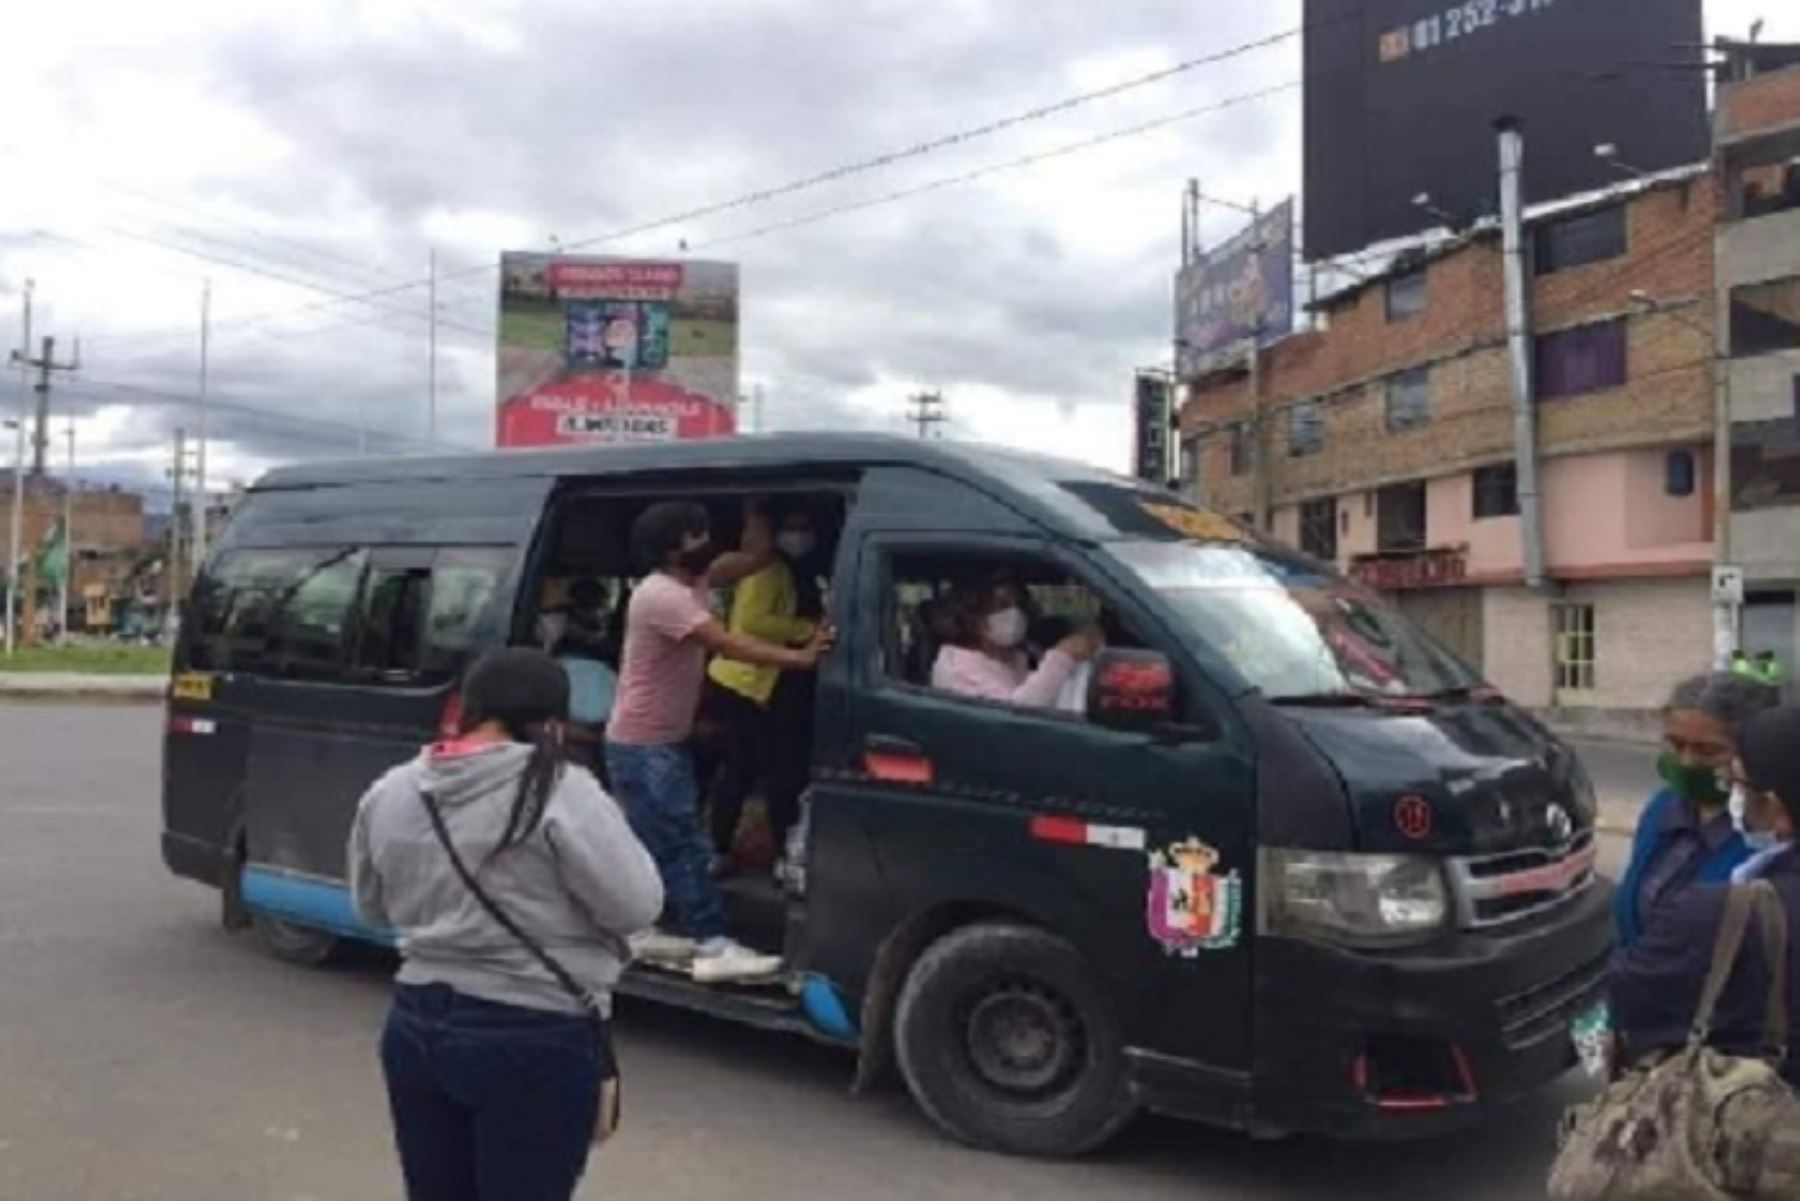 Asimismo, ,ante la inminente reactivación de los servicios de taxis y mototaxis que habían sido suspendidos en la provincia de Cajamarca, la Defensoría del Pueblo recomendó la implementación gradual y progresiva de estos servicios.